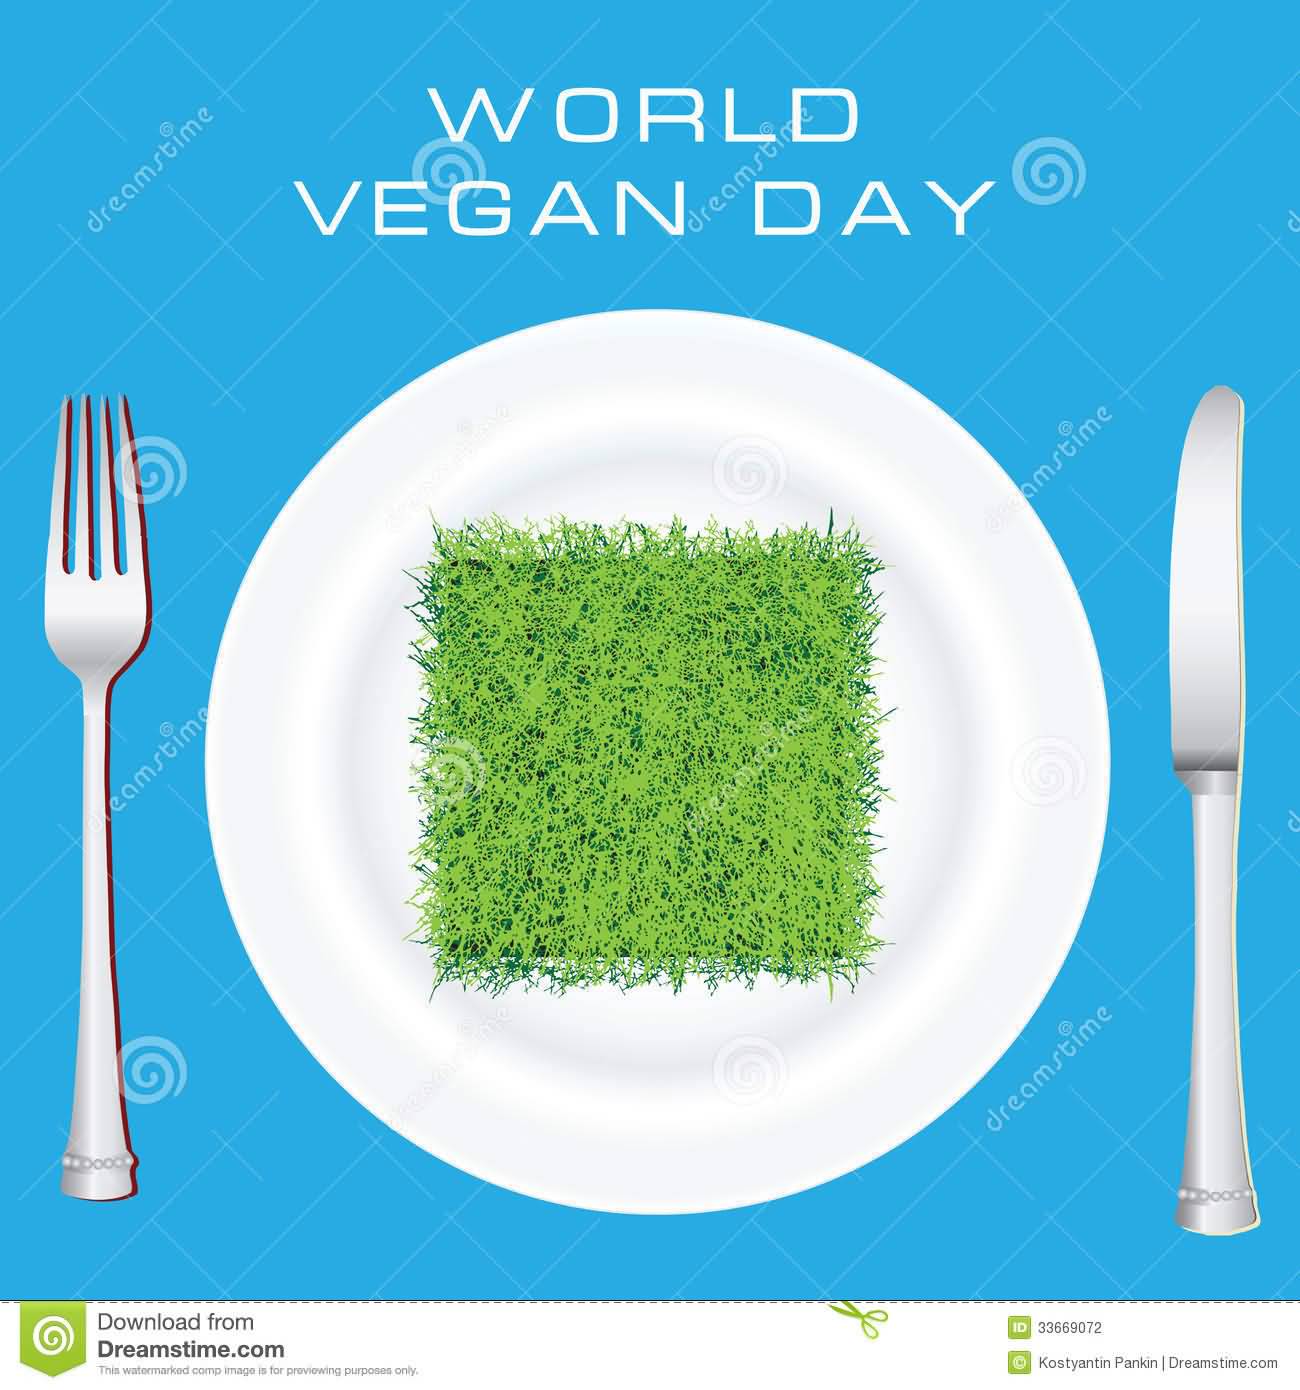 World Vegan Day Grass In Plate for breakfast illustration